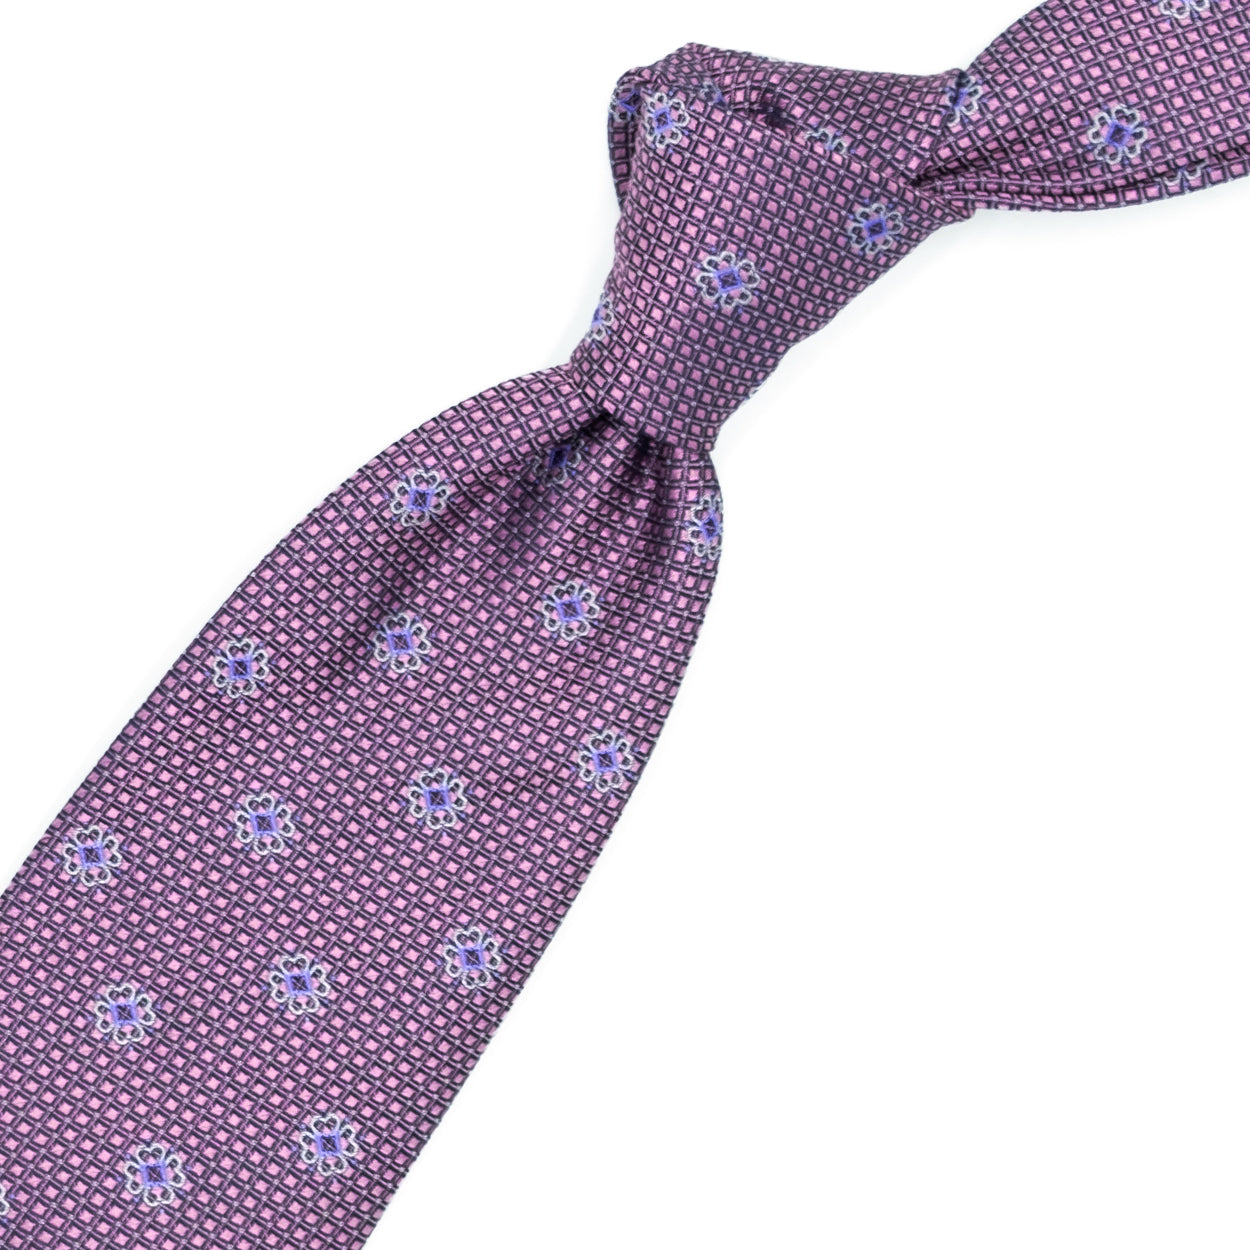 Cravatta rosa con grigi e azzurri